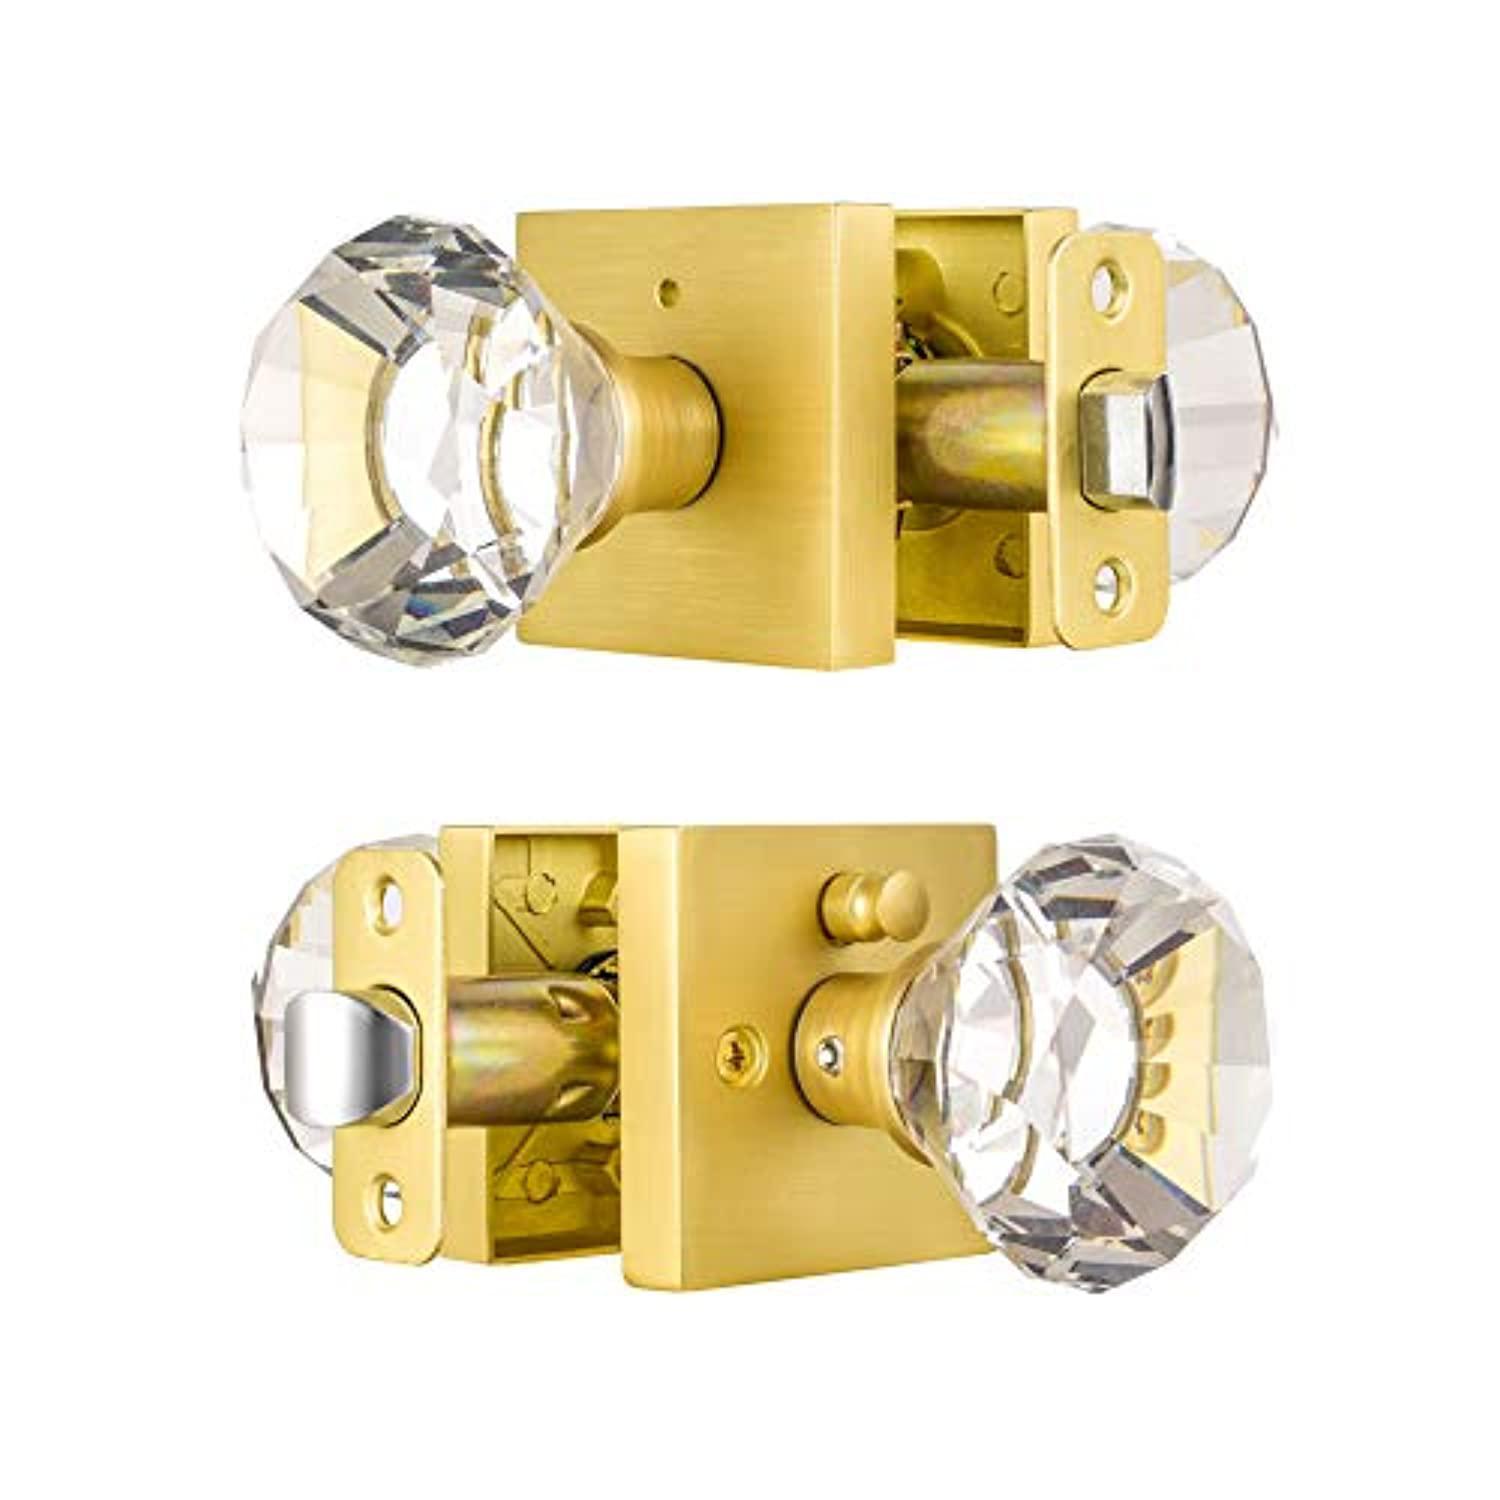 hiemey square glass crystal door knobs interior, bedroom and bathroom privacy door knobs with lock, satin brass door knobs se